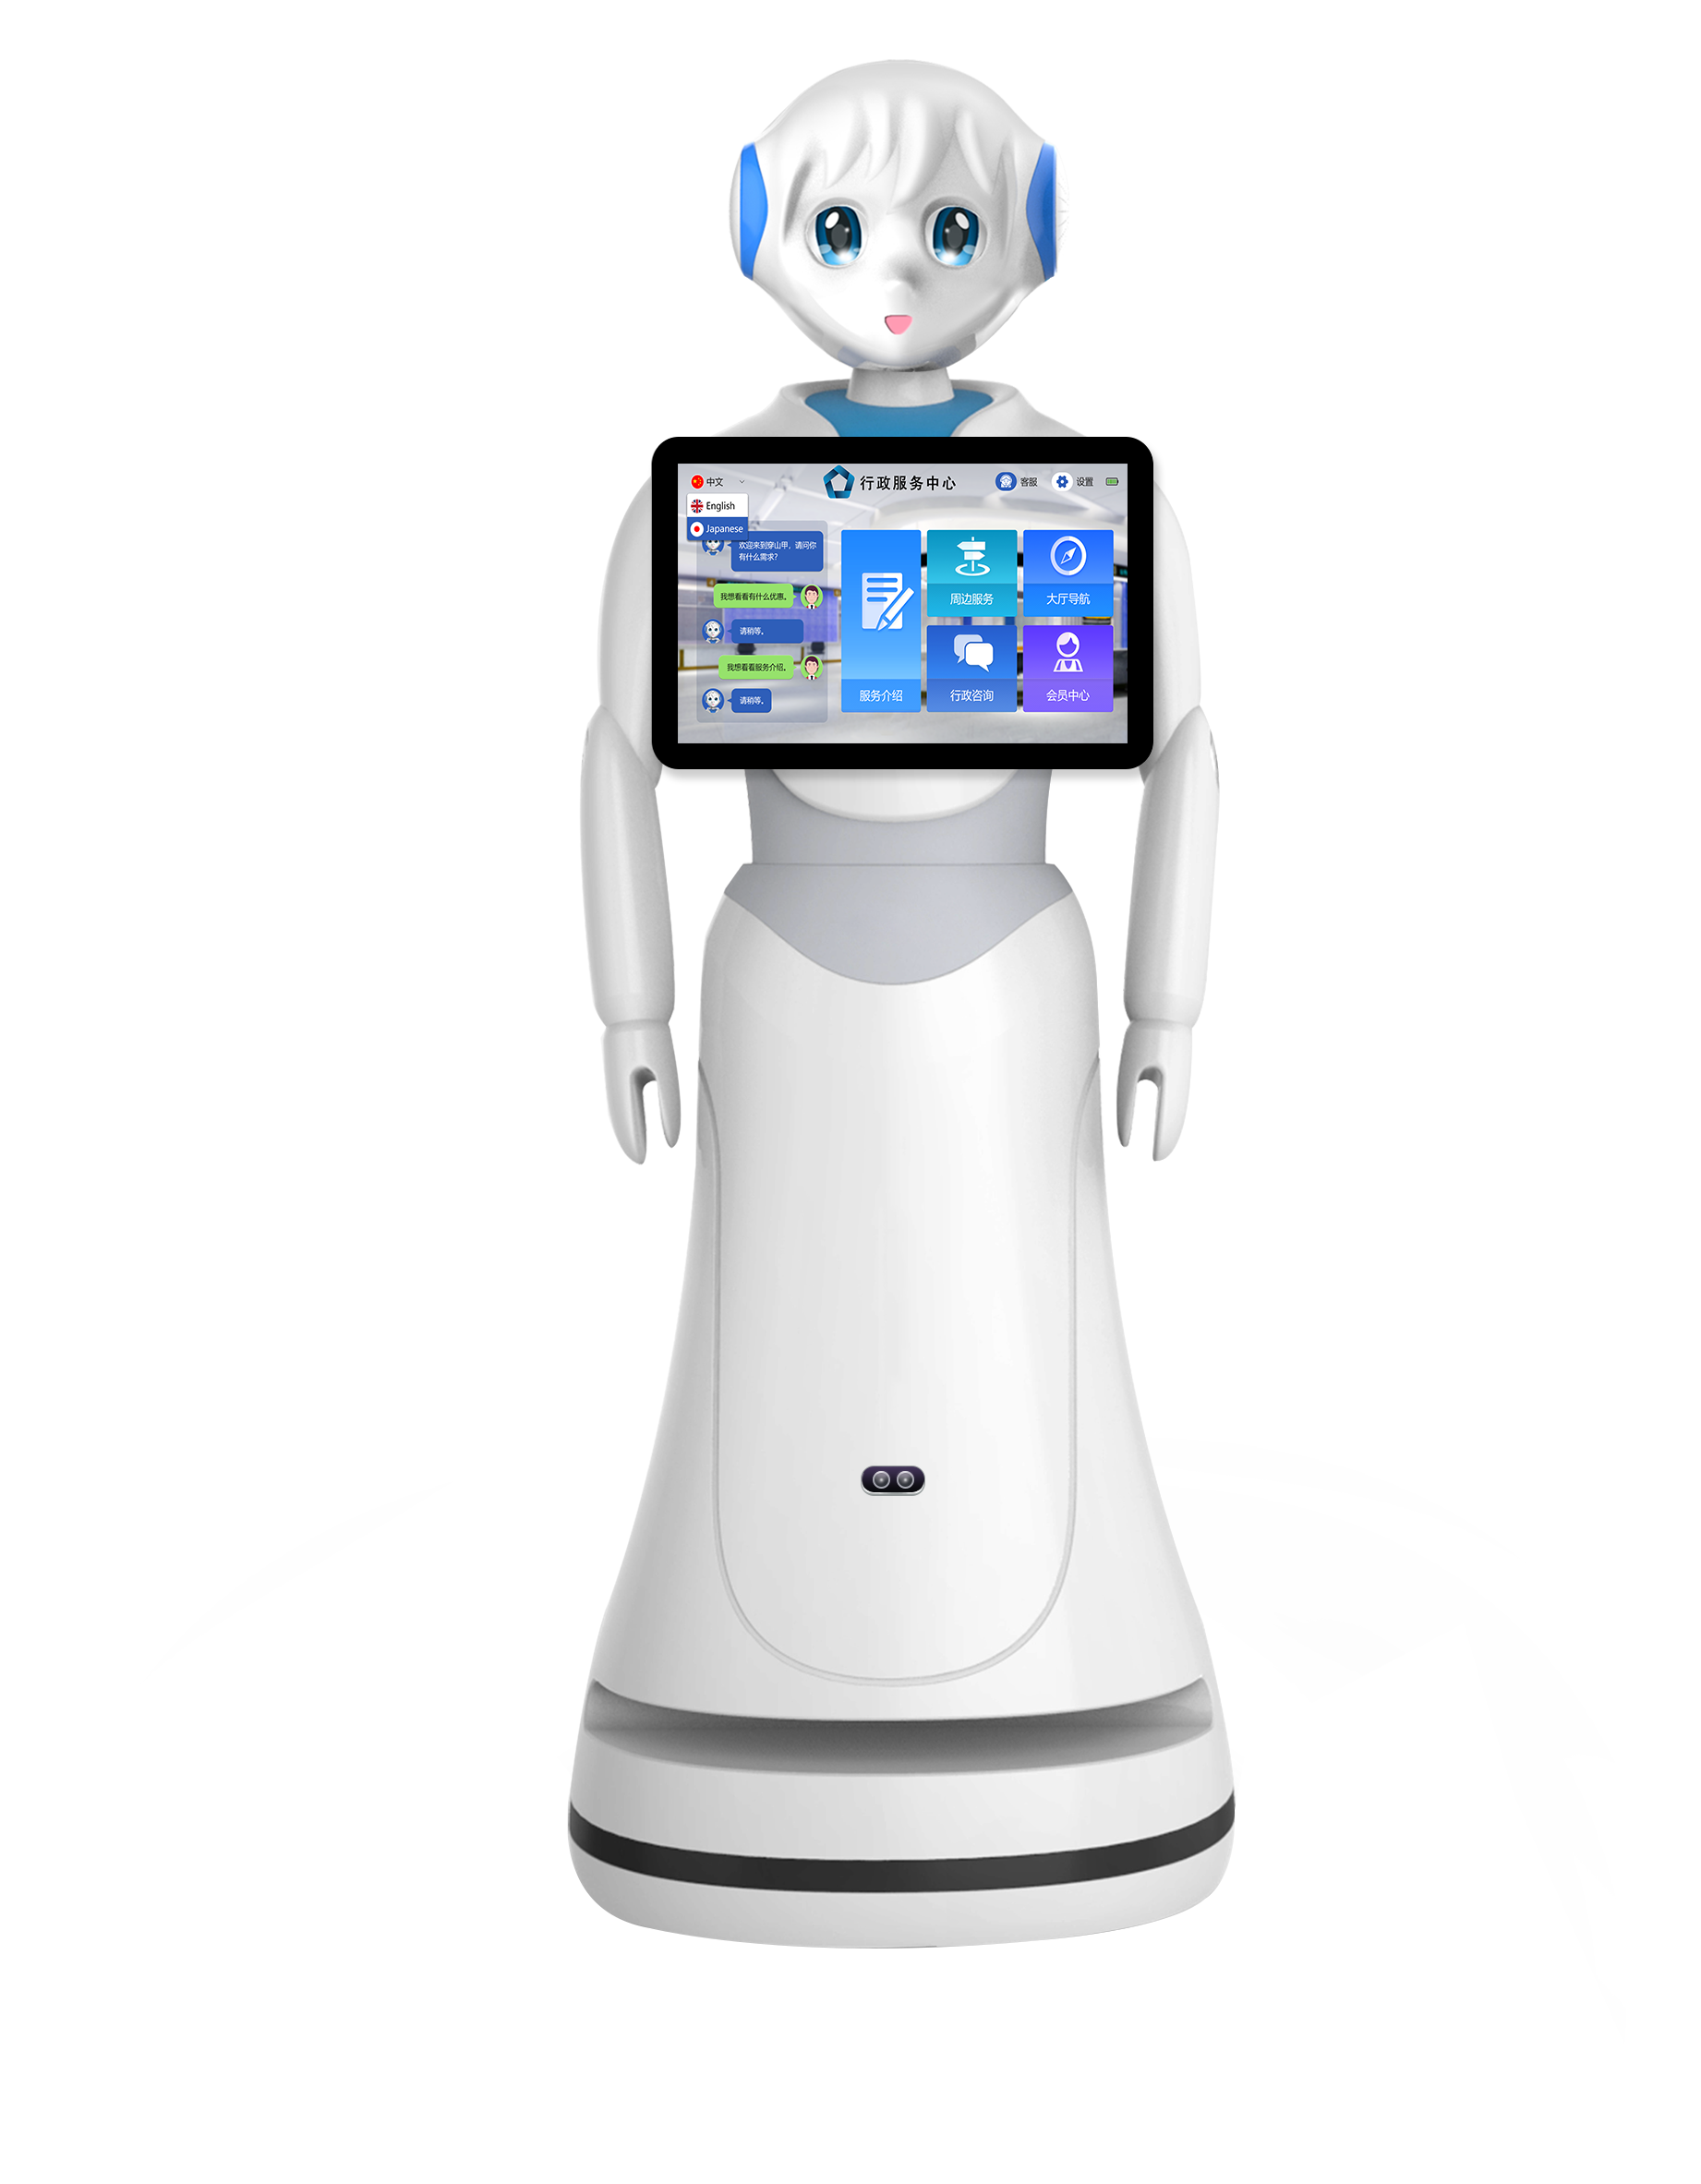 福建医疗远程问诊机器人推荐咨询 和谐共赢 昆山新正源机器人智能科技供应